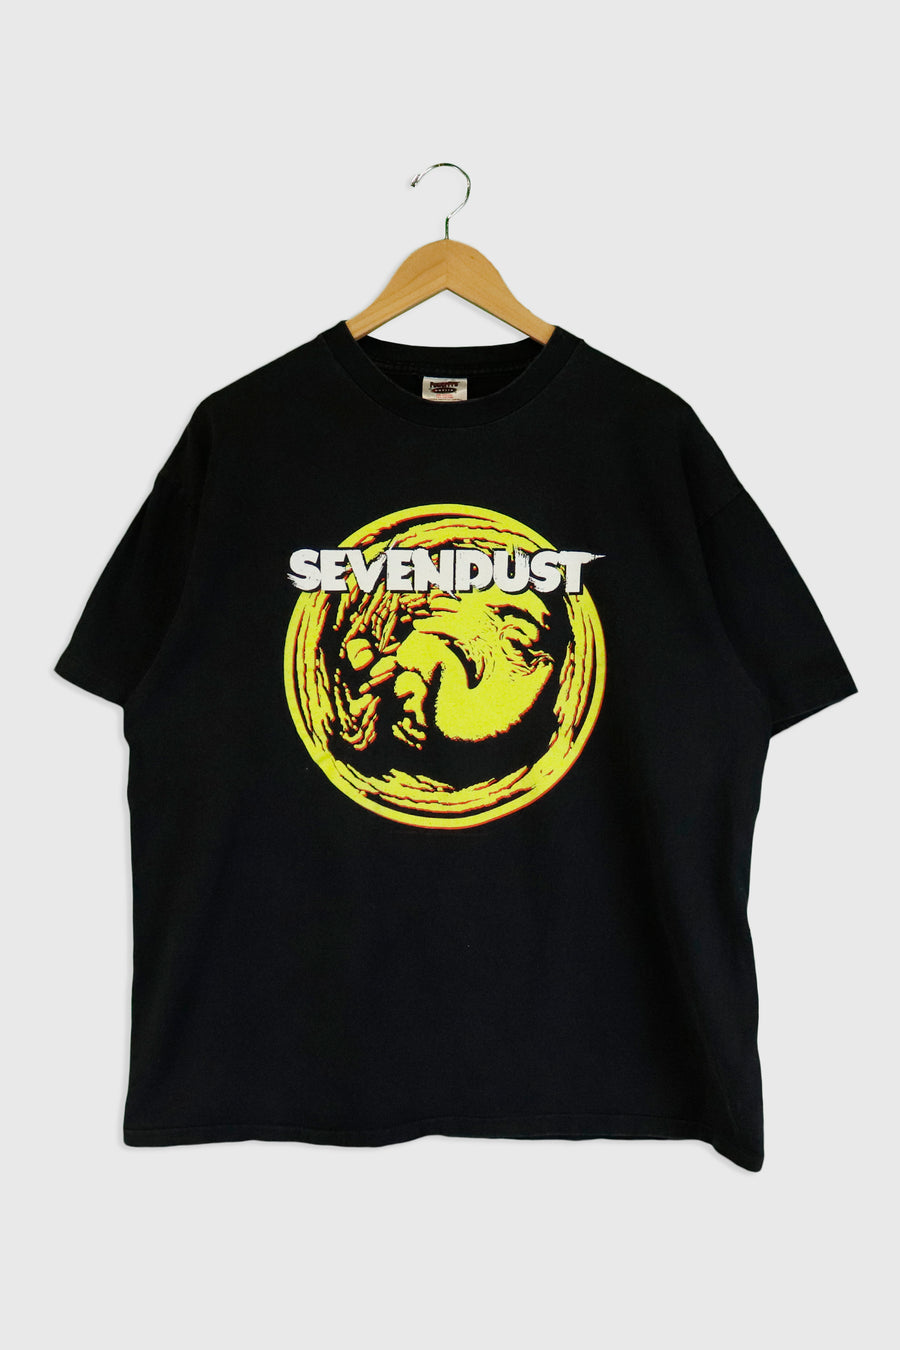 Vintage Sevendust Band T Shirt Sz XL